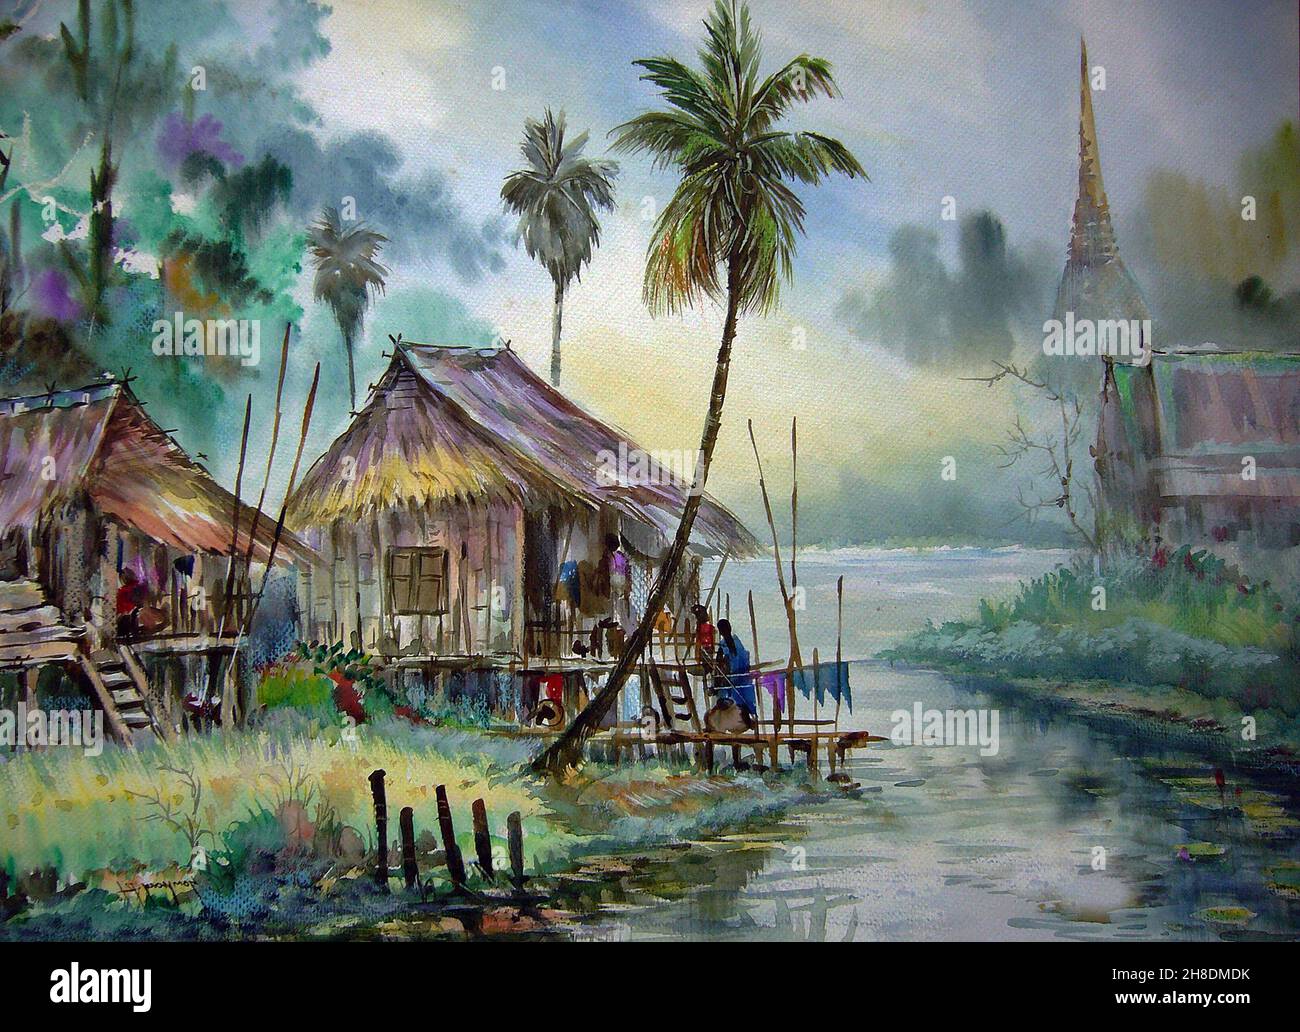 Art, peinture, aquarelle, cabane nord-est, Thaïlande, campagne Banque D'Images